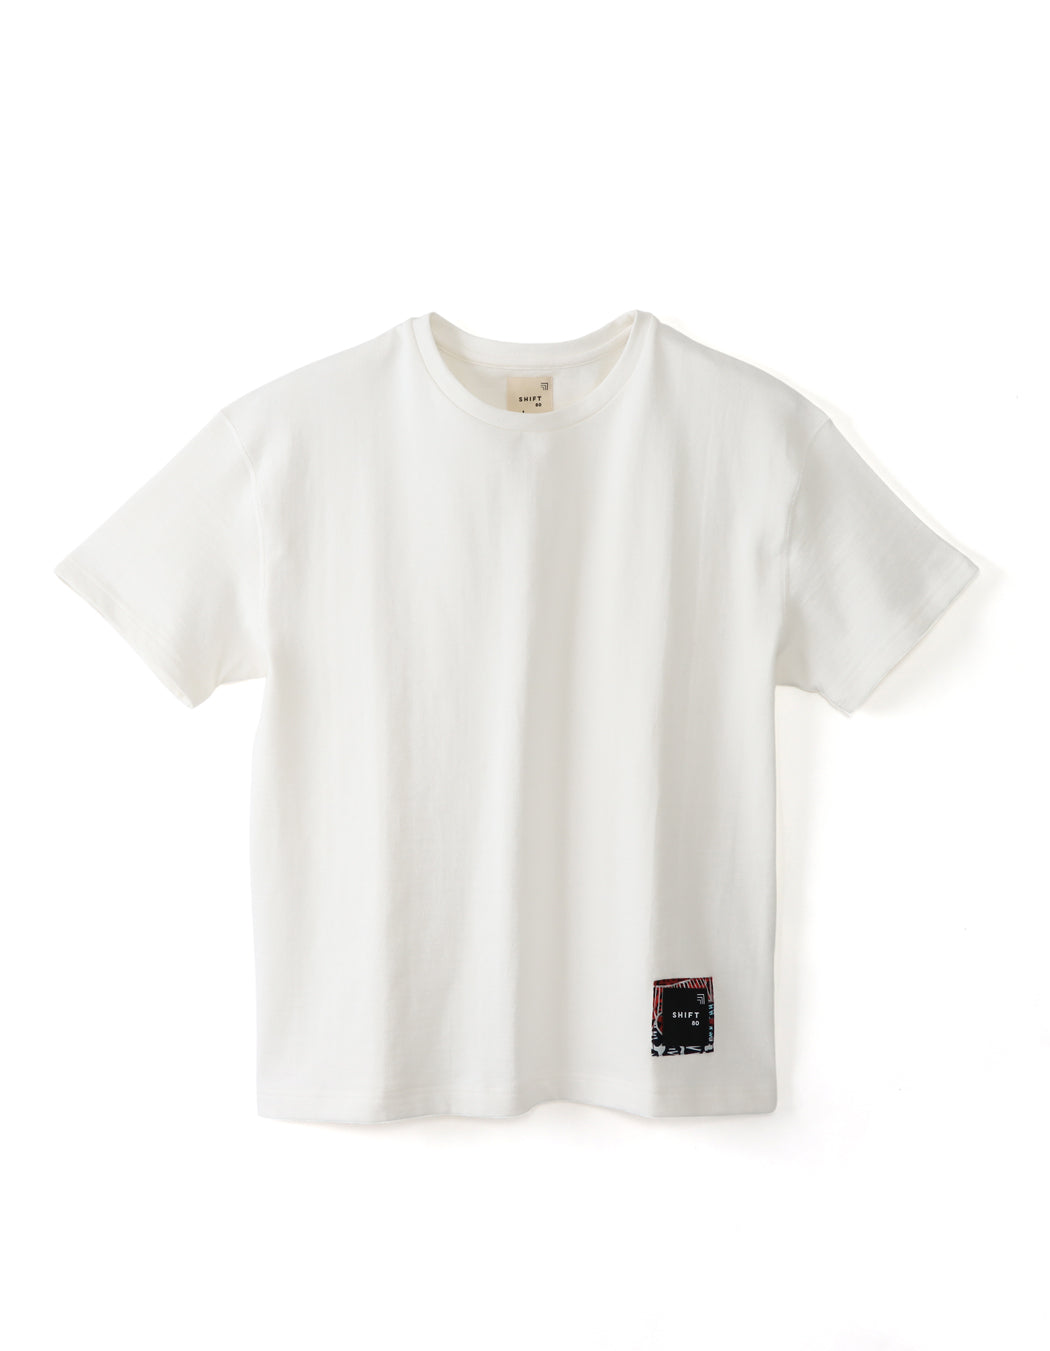 ウガンダオーガニックコットン吊り編みオーバーサイズTシャツ – SHIFT